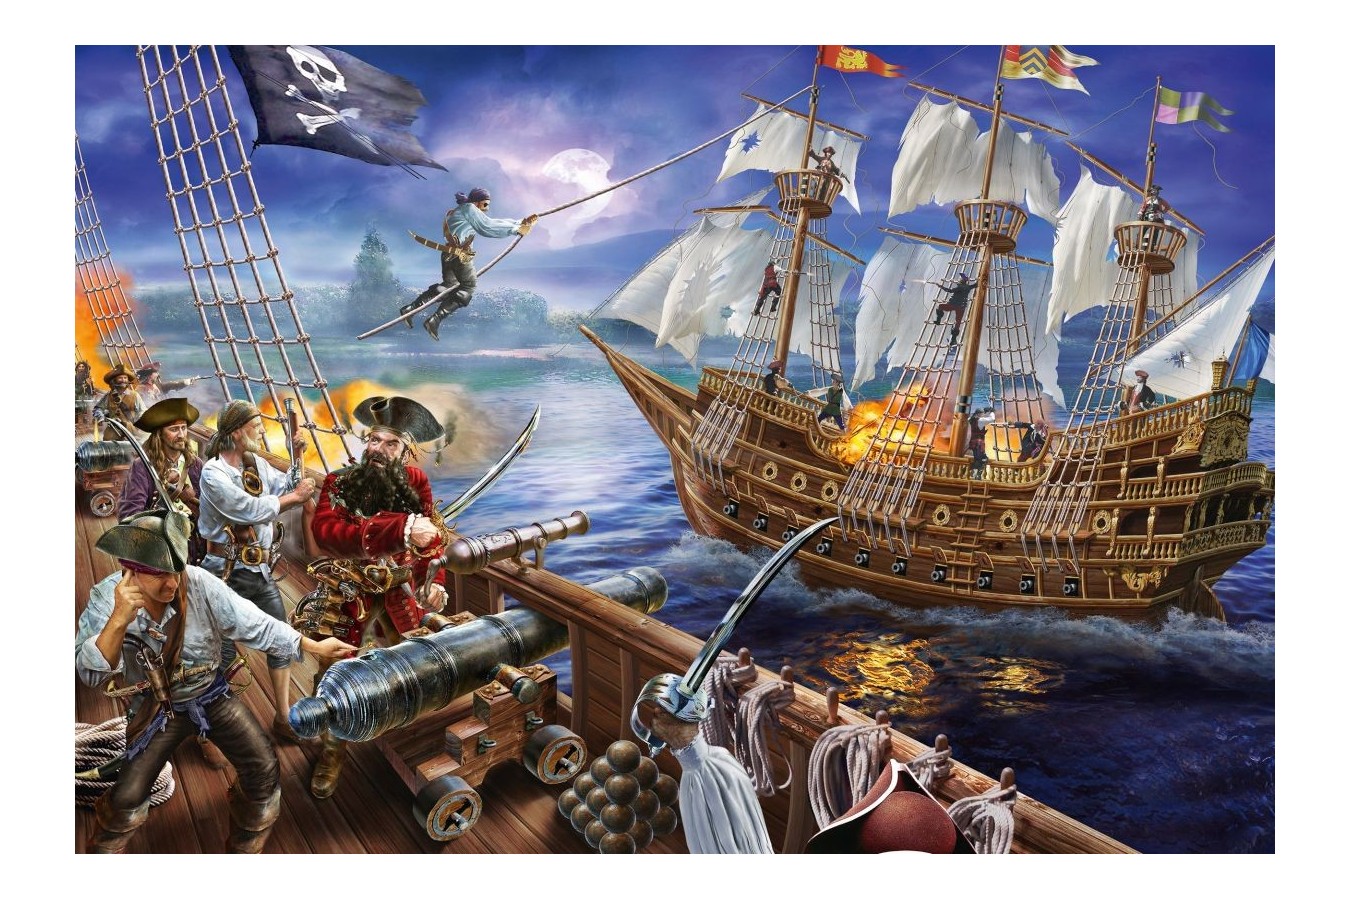 Puzzle Schmidt - Pirate Adventure, 150 piese (56252)